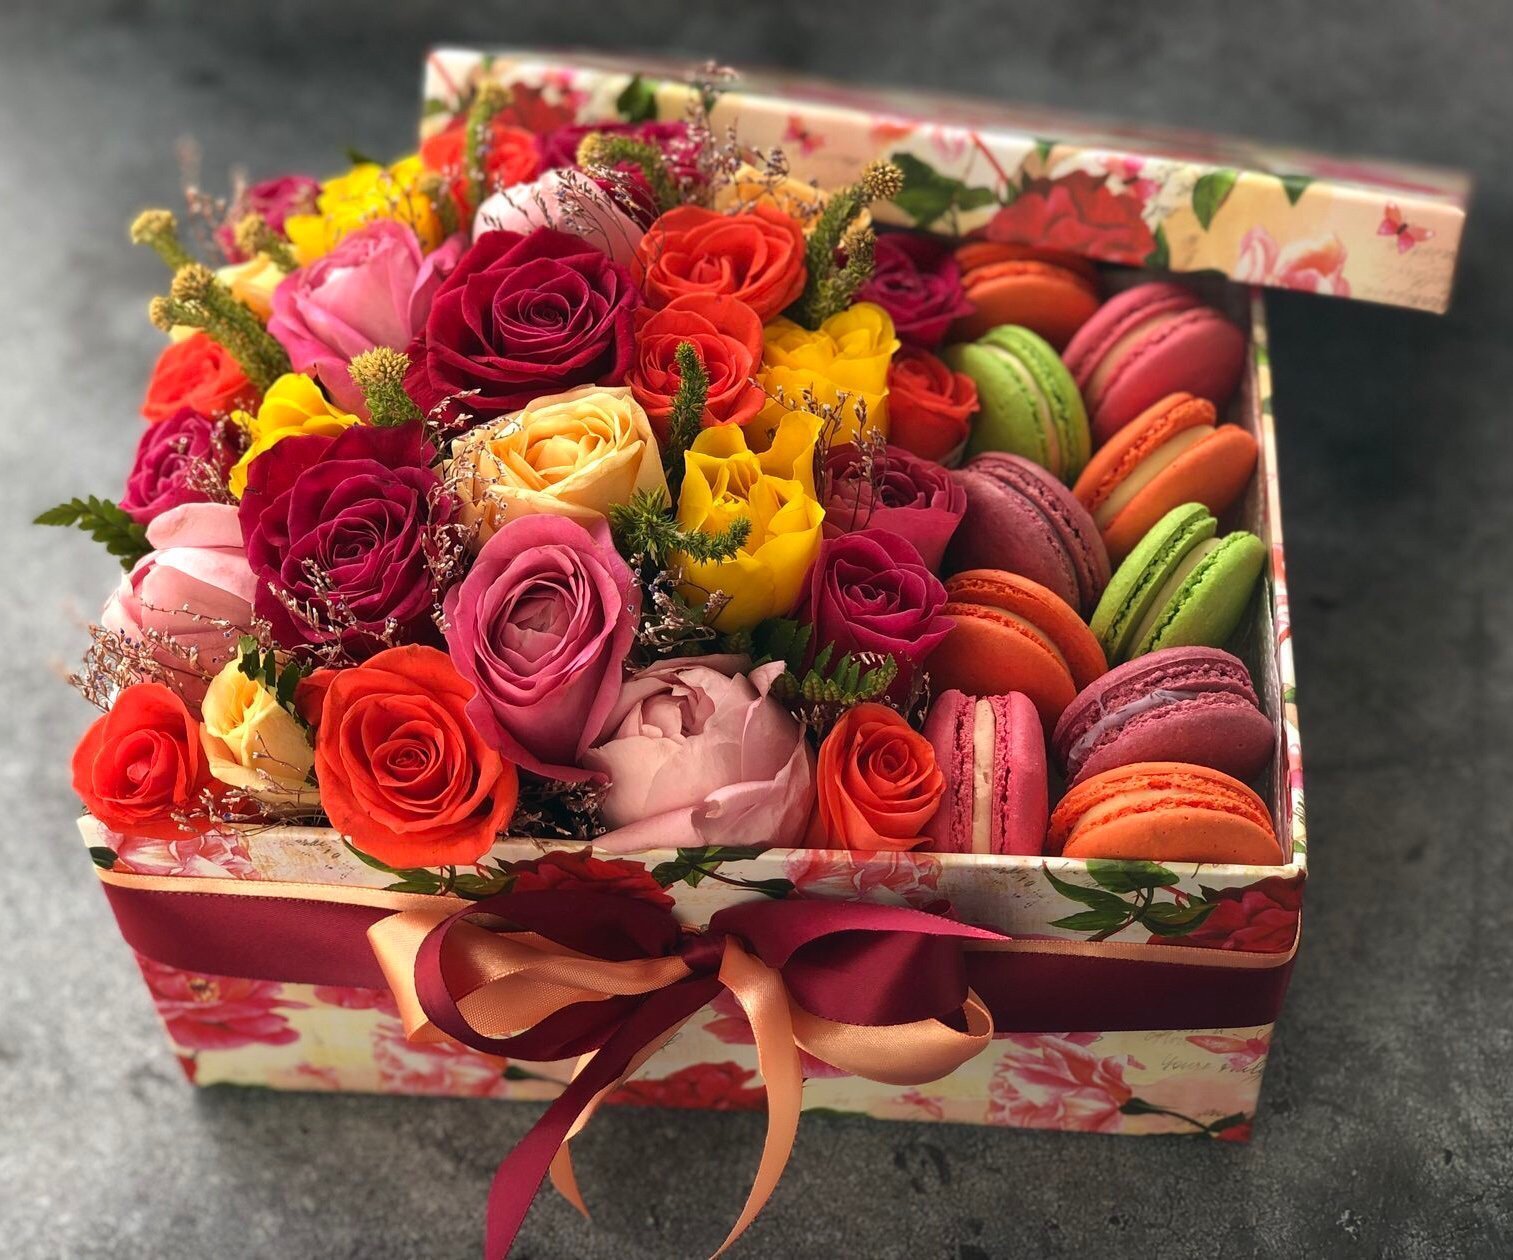 Красивый подарок женщине на день рождения. Цветы с конфетами. Красивый букет в подарок. Букет в коробке со сладостями. Коробка с цветами и конфетами.